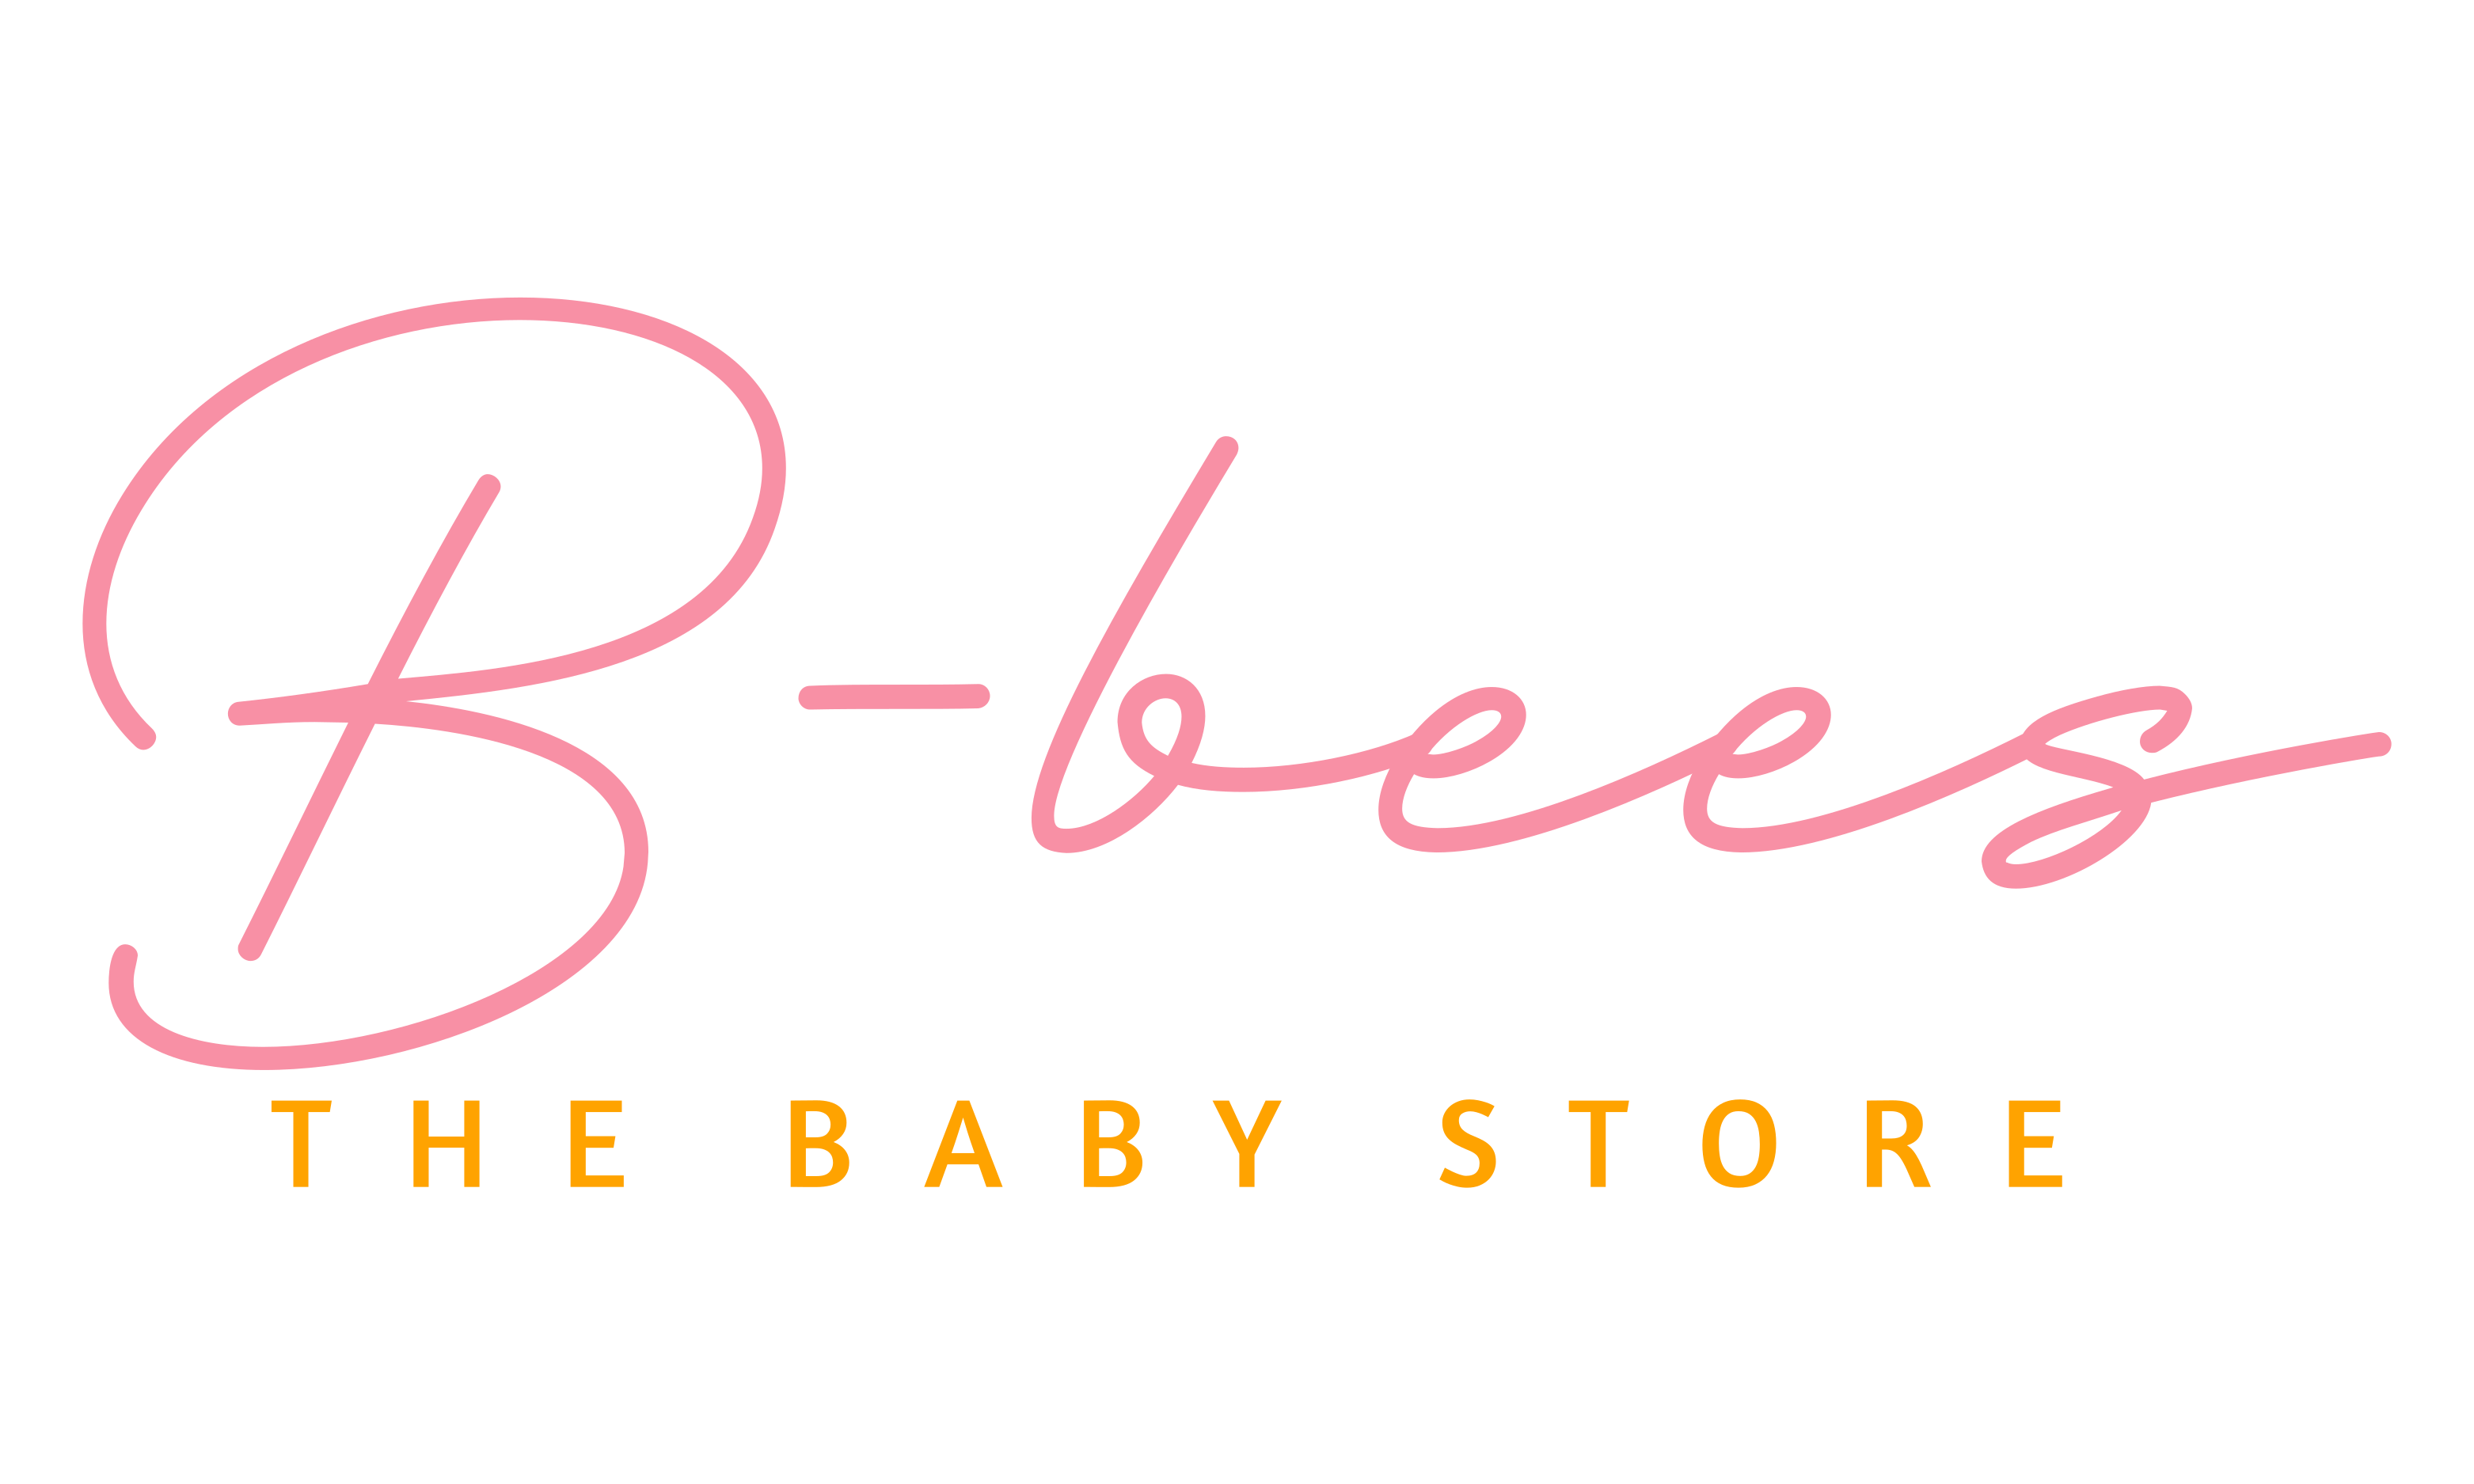 B-bees